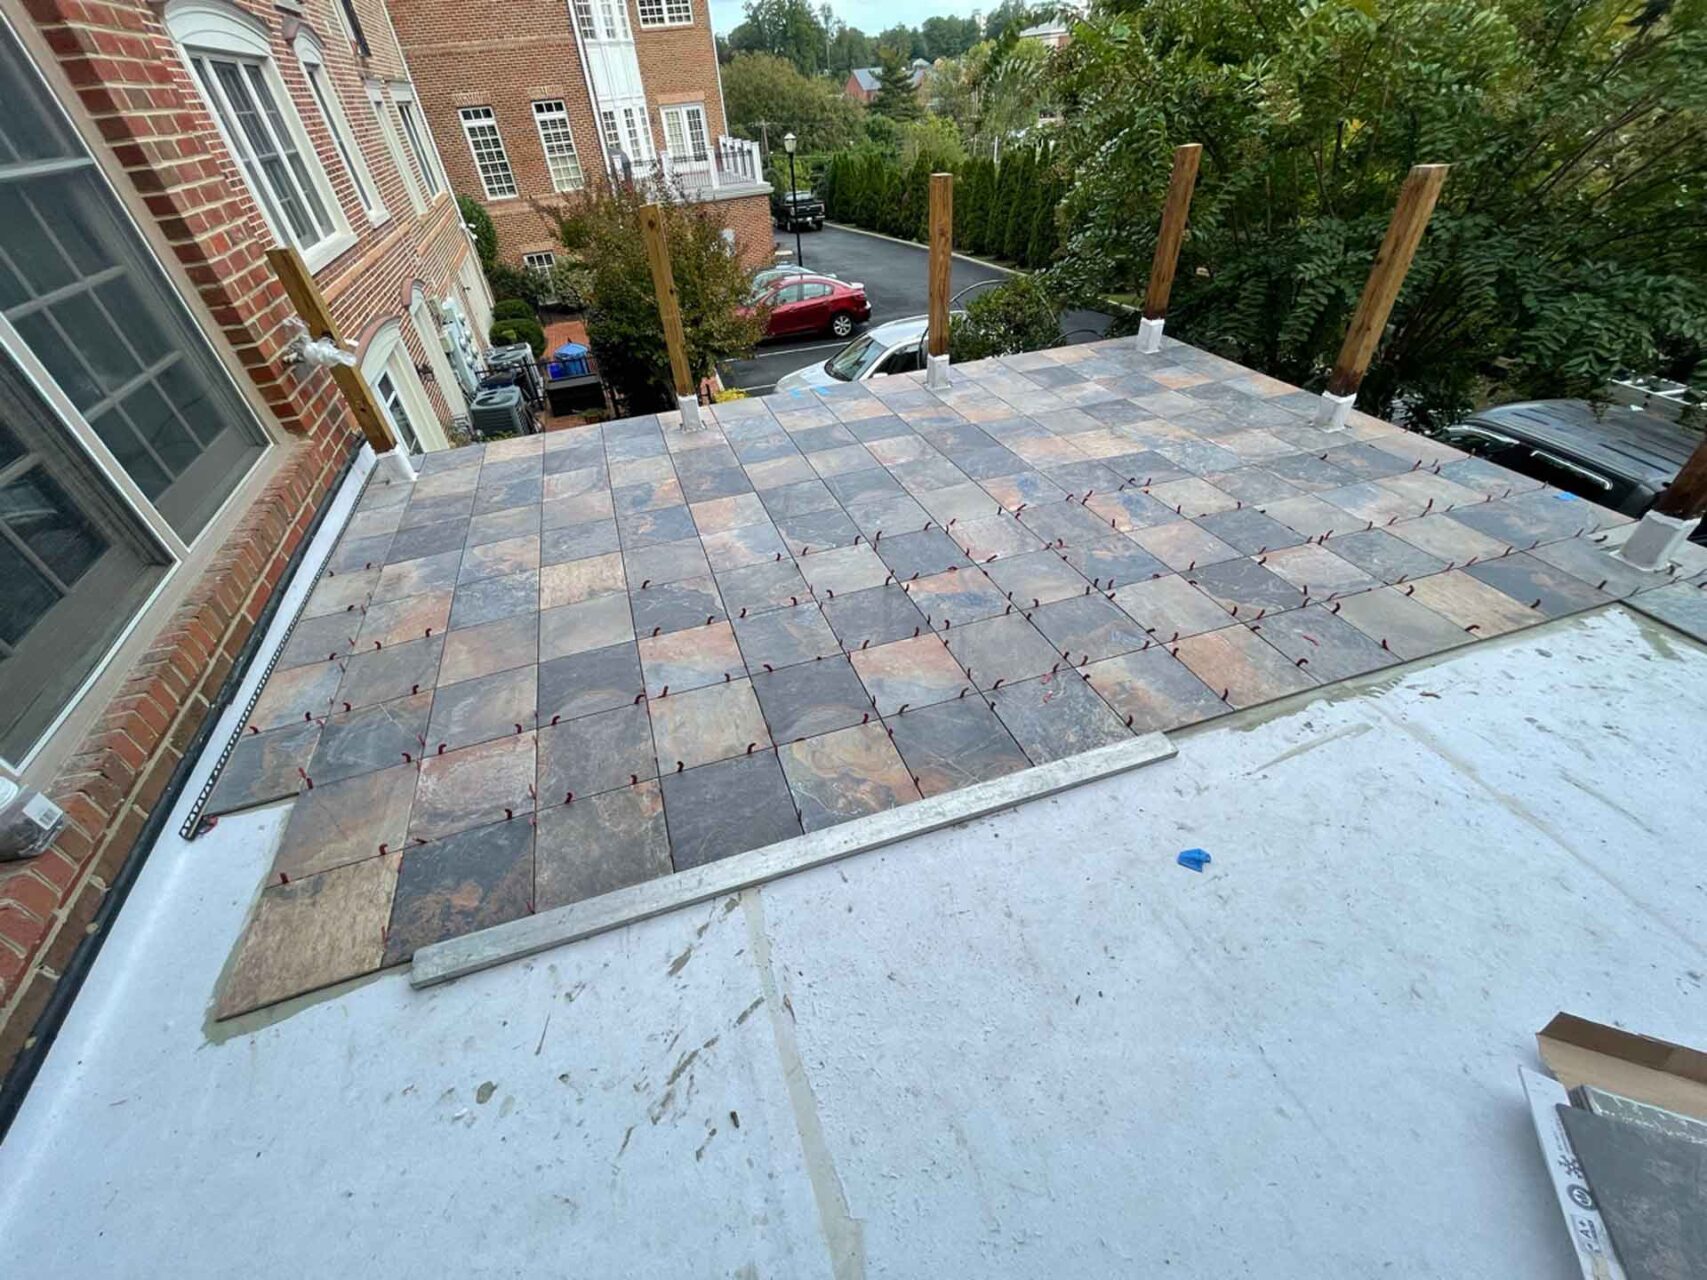 Tile being laid on Tiledek membrane over on roof deck.